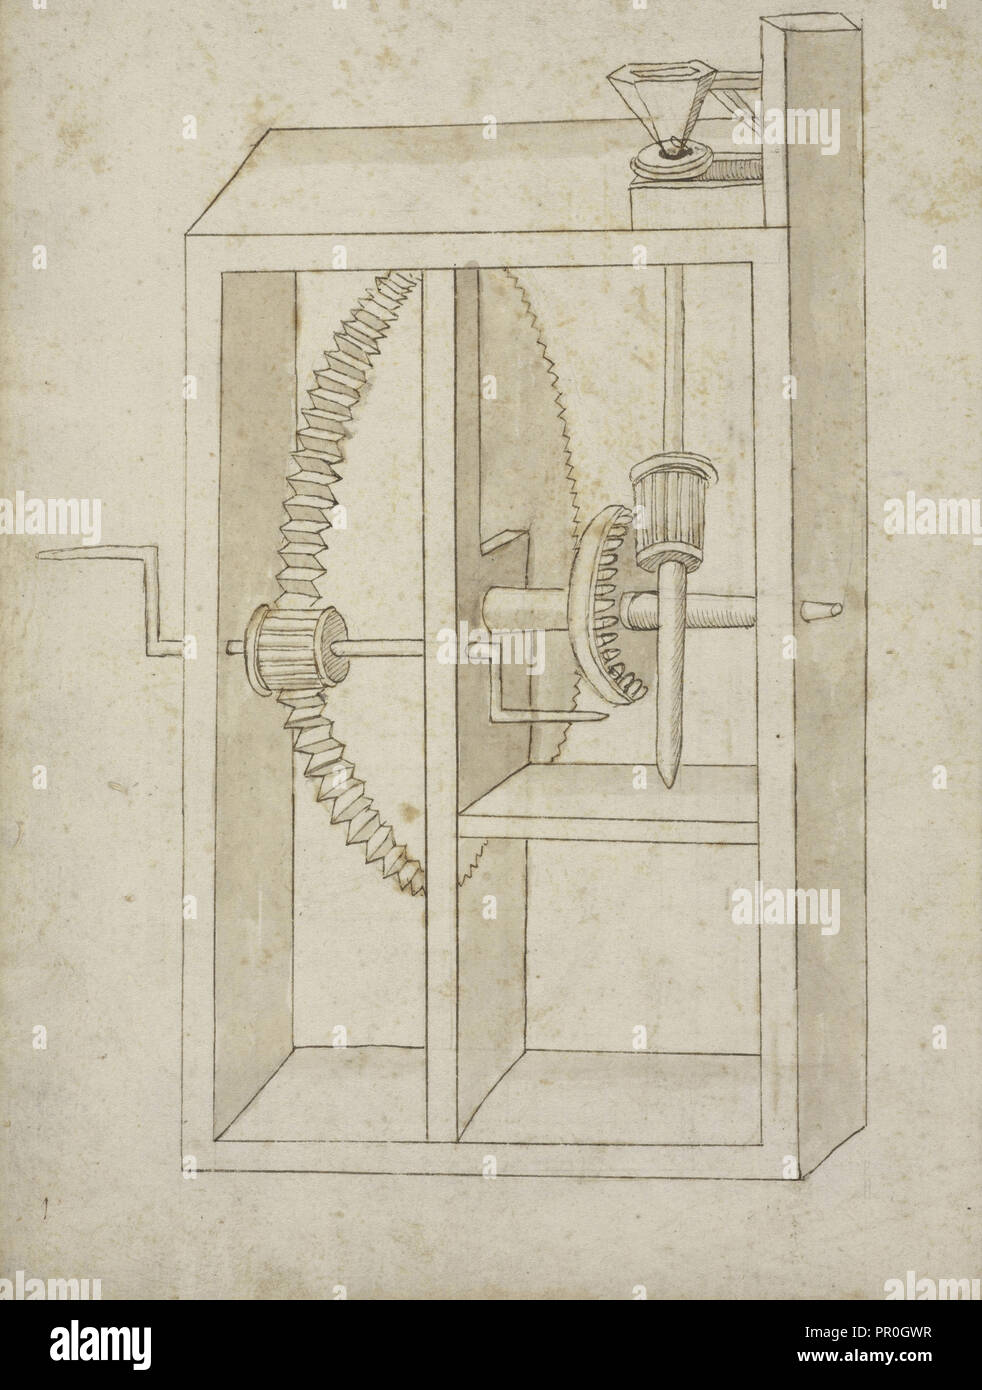 Mühle mit Kurbel angetrieben, Edificij et Maschine MS, Martini, Francesco di Giorgio, 1439-1502, Braun, und waschen Sie die Tinte auf dem Papier Stockfoto